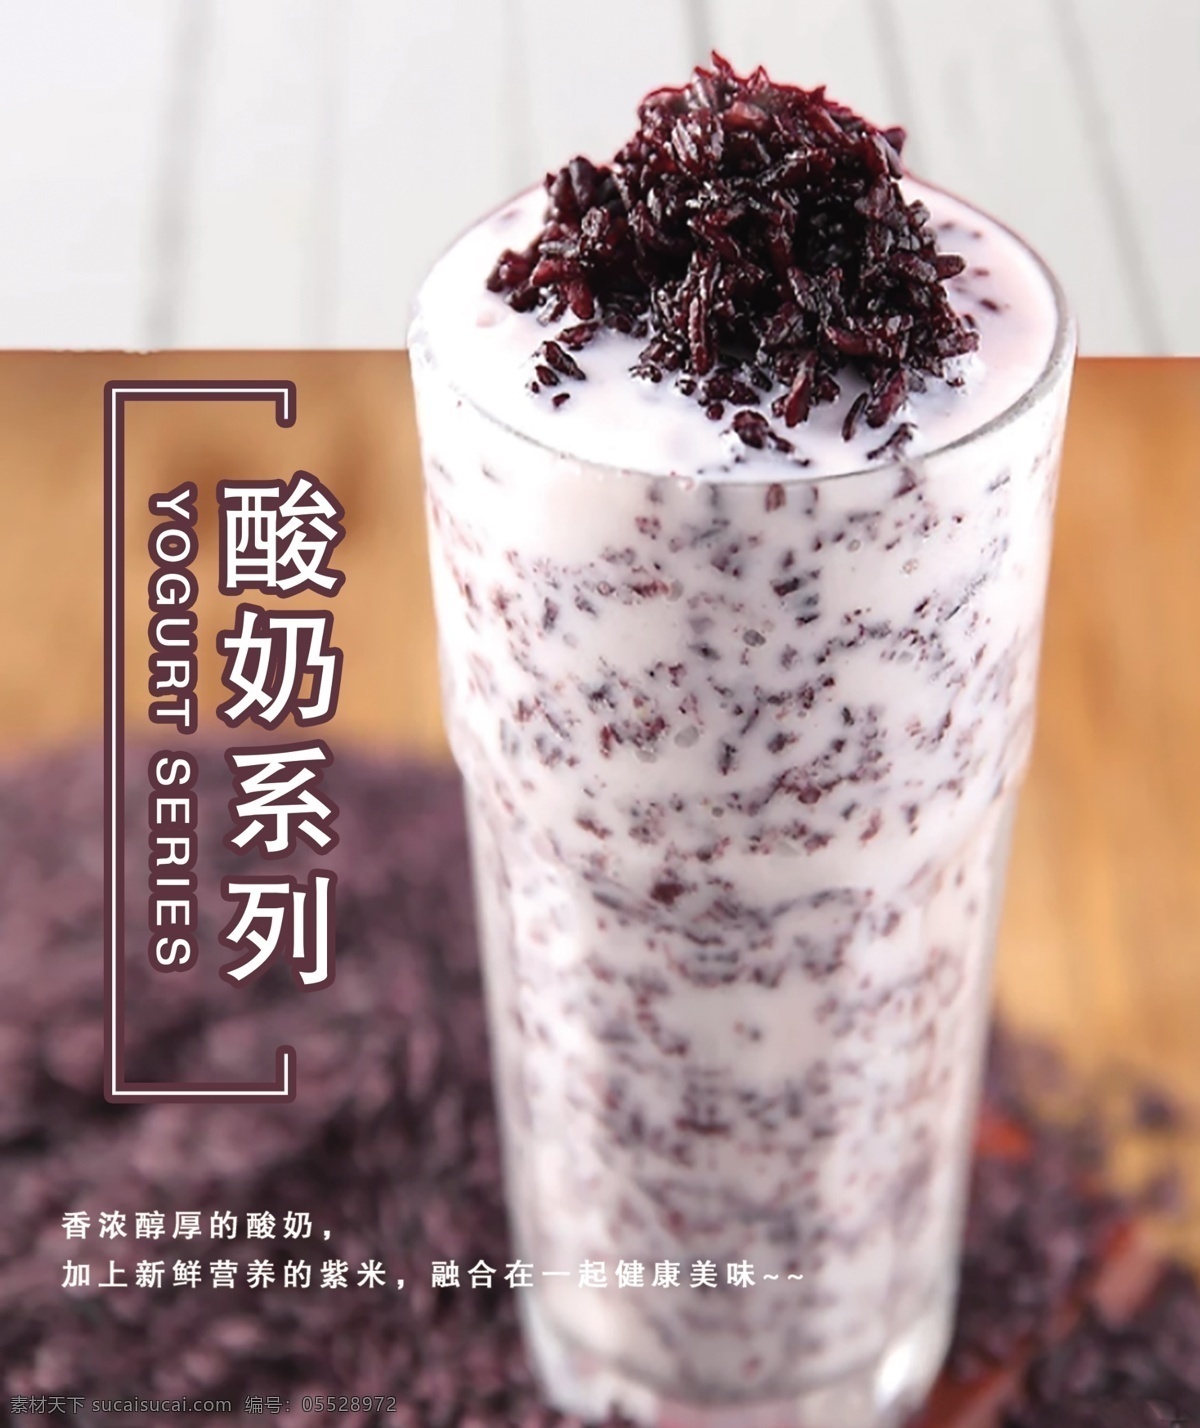 紫米酸奶 广告 海报 饮品